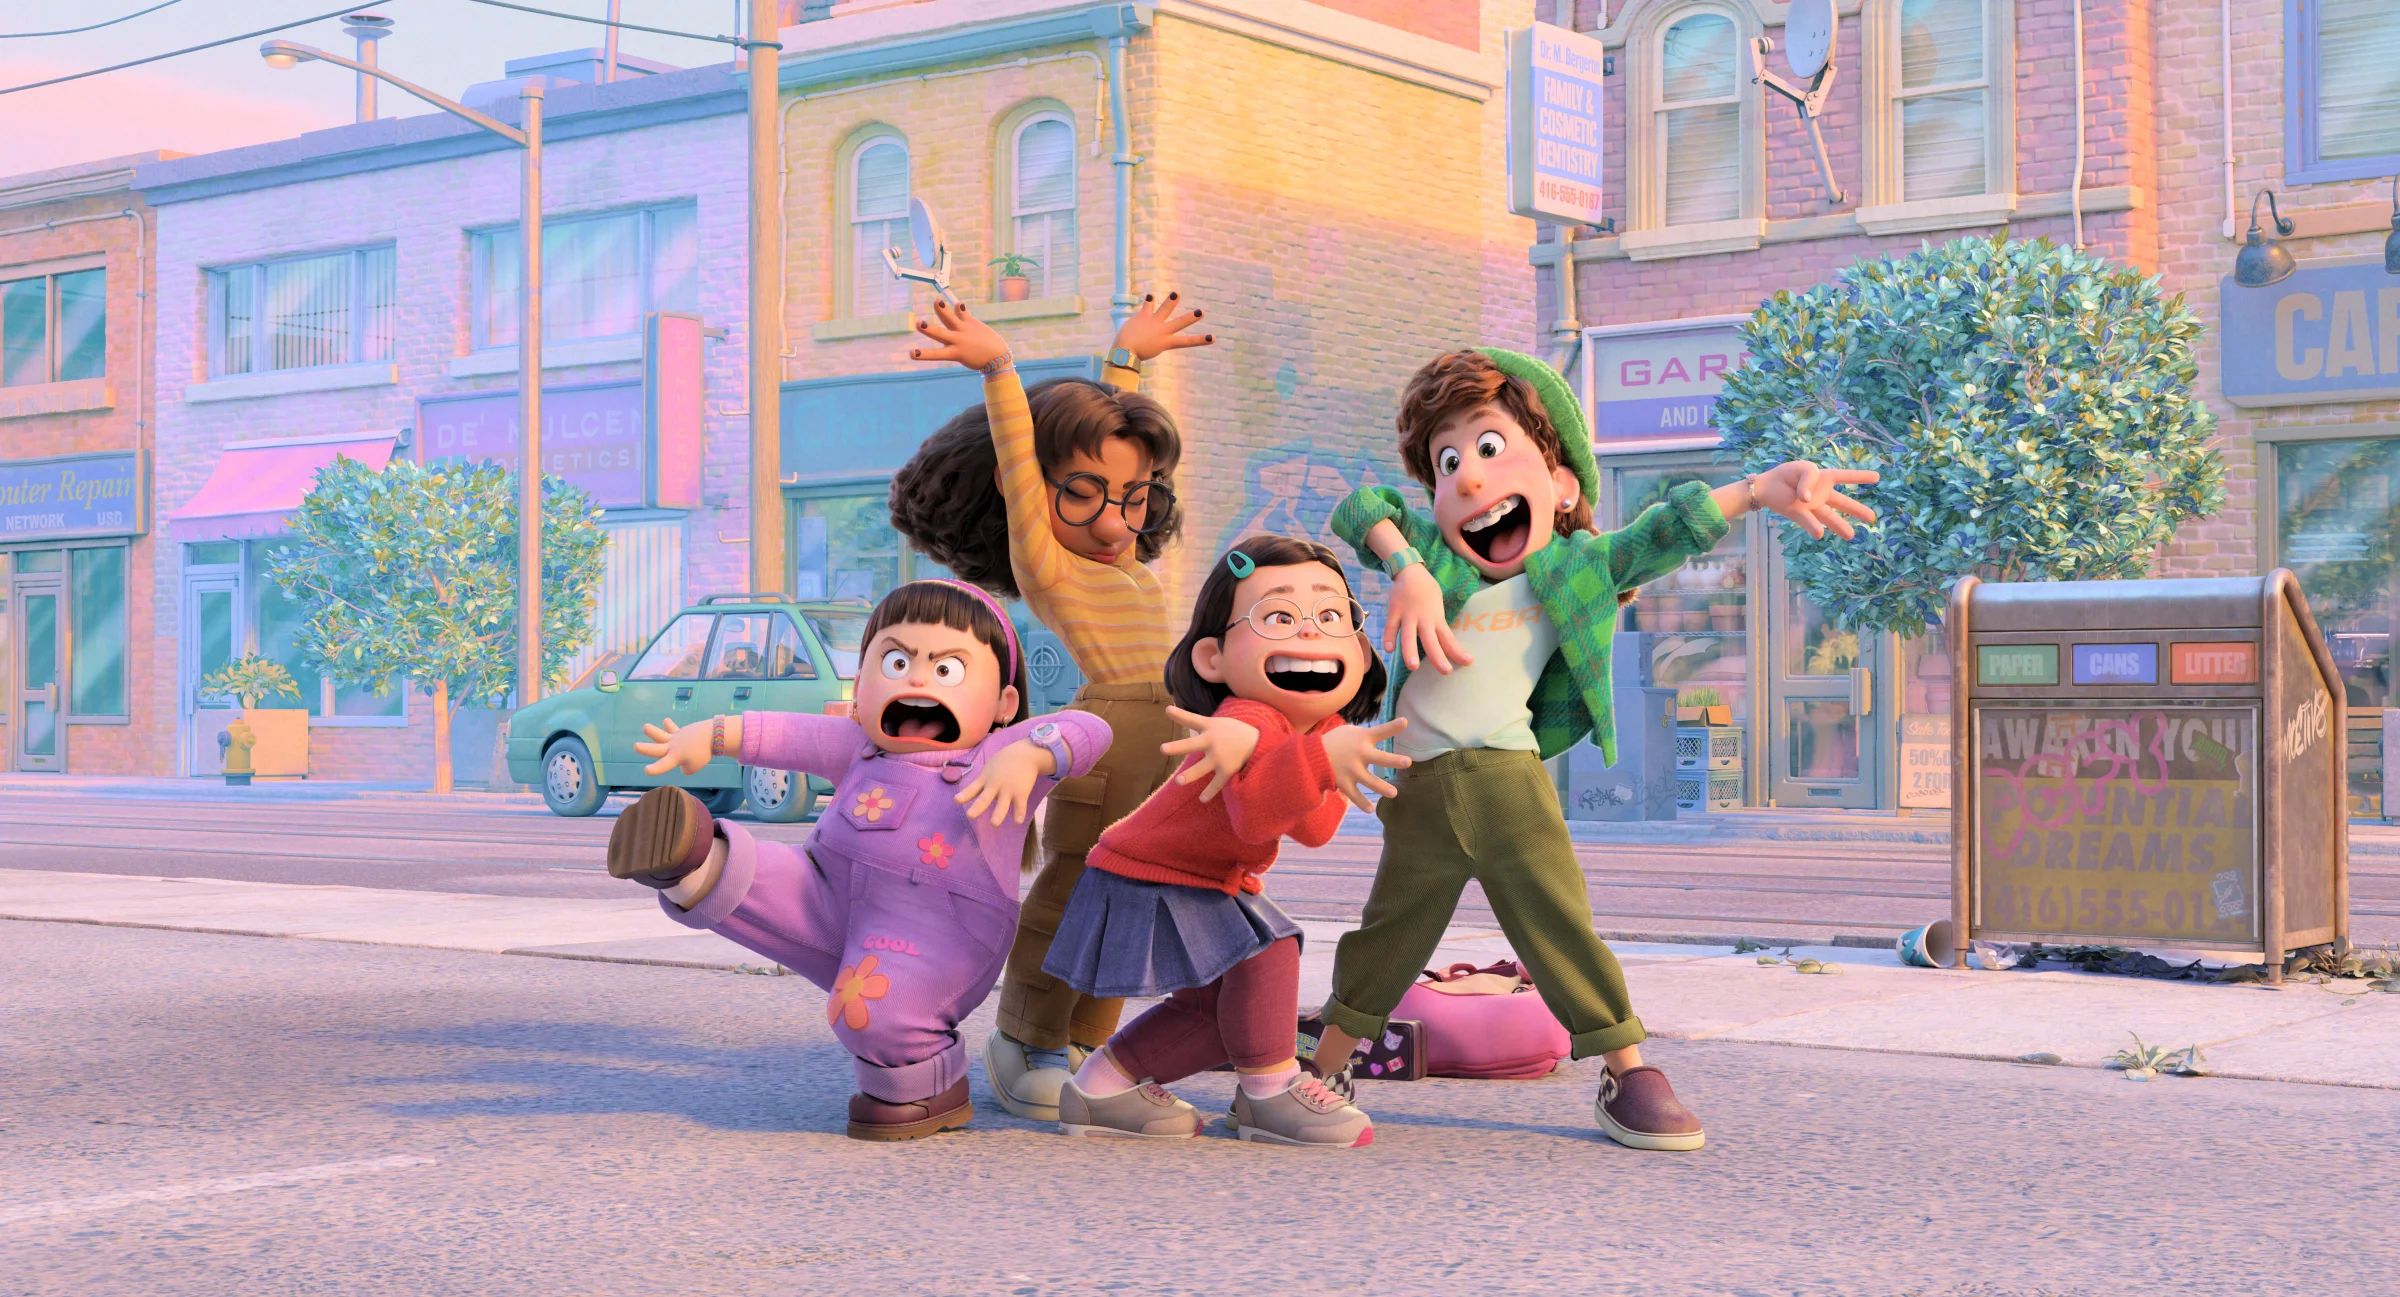 Пережить 13 и понять в 40: какие недетские проблемы поднимает новый мультфильм Pixar «Я краснею» - фото 3